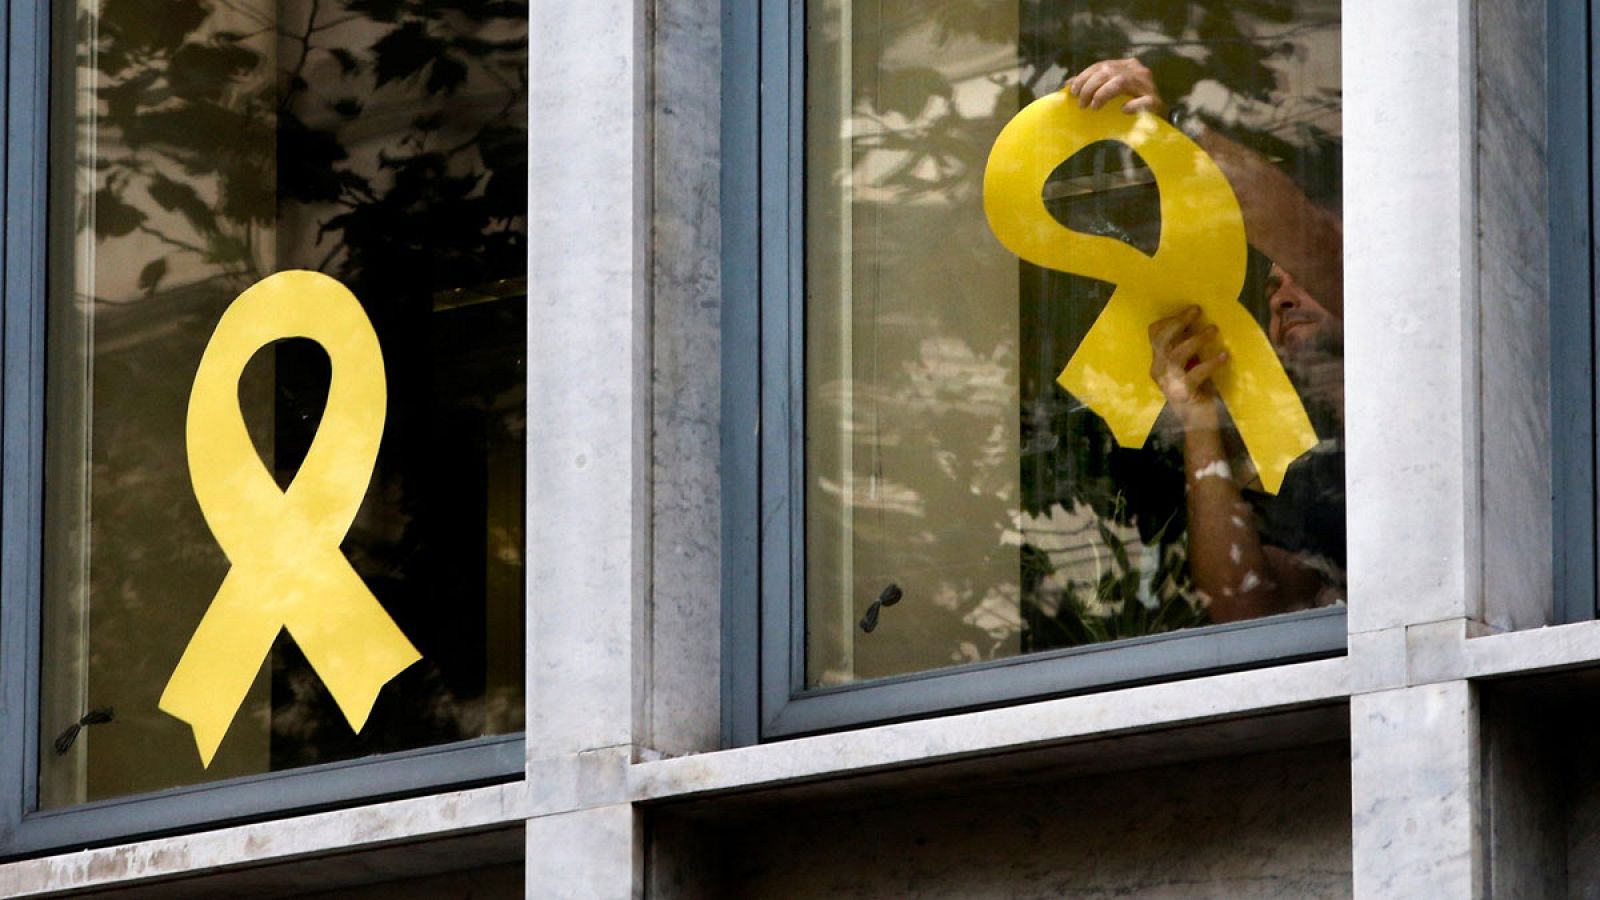 Cataluña | Comienzan a retirar lazos amarillos de edificios públicos de Cataluña poco antes de que termine el plazo